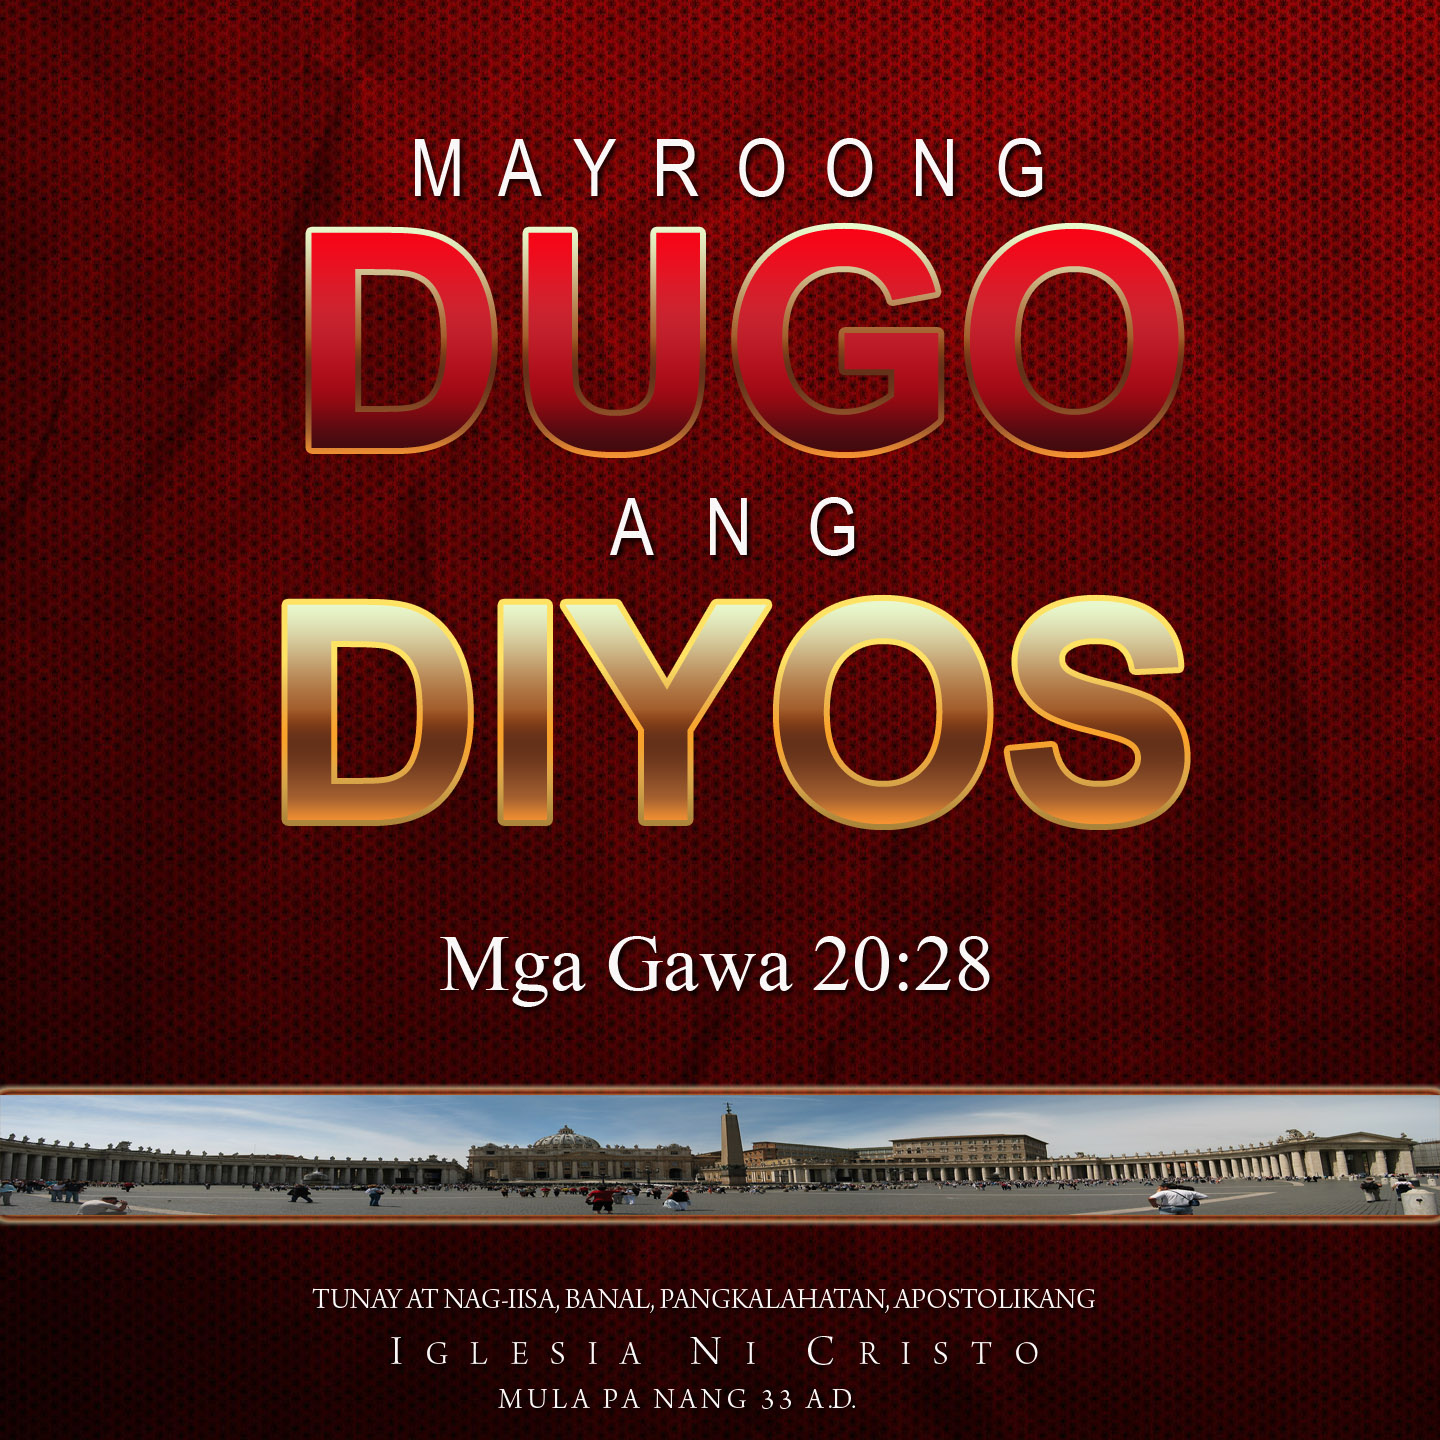 May Dugo ang Diyos!